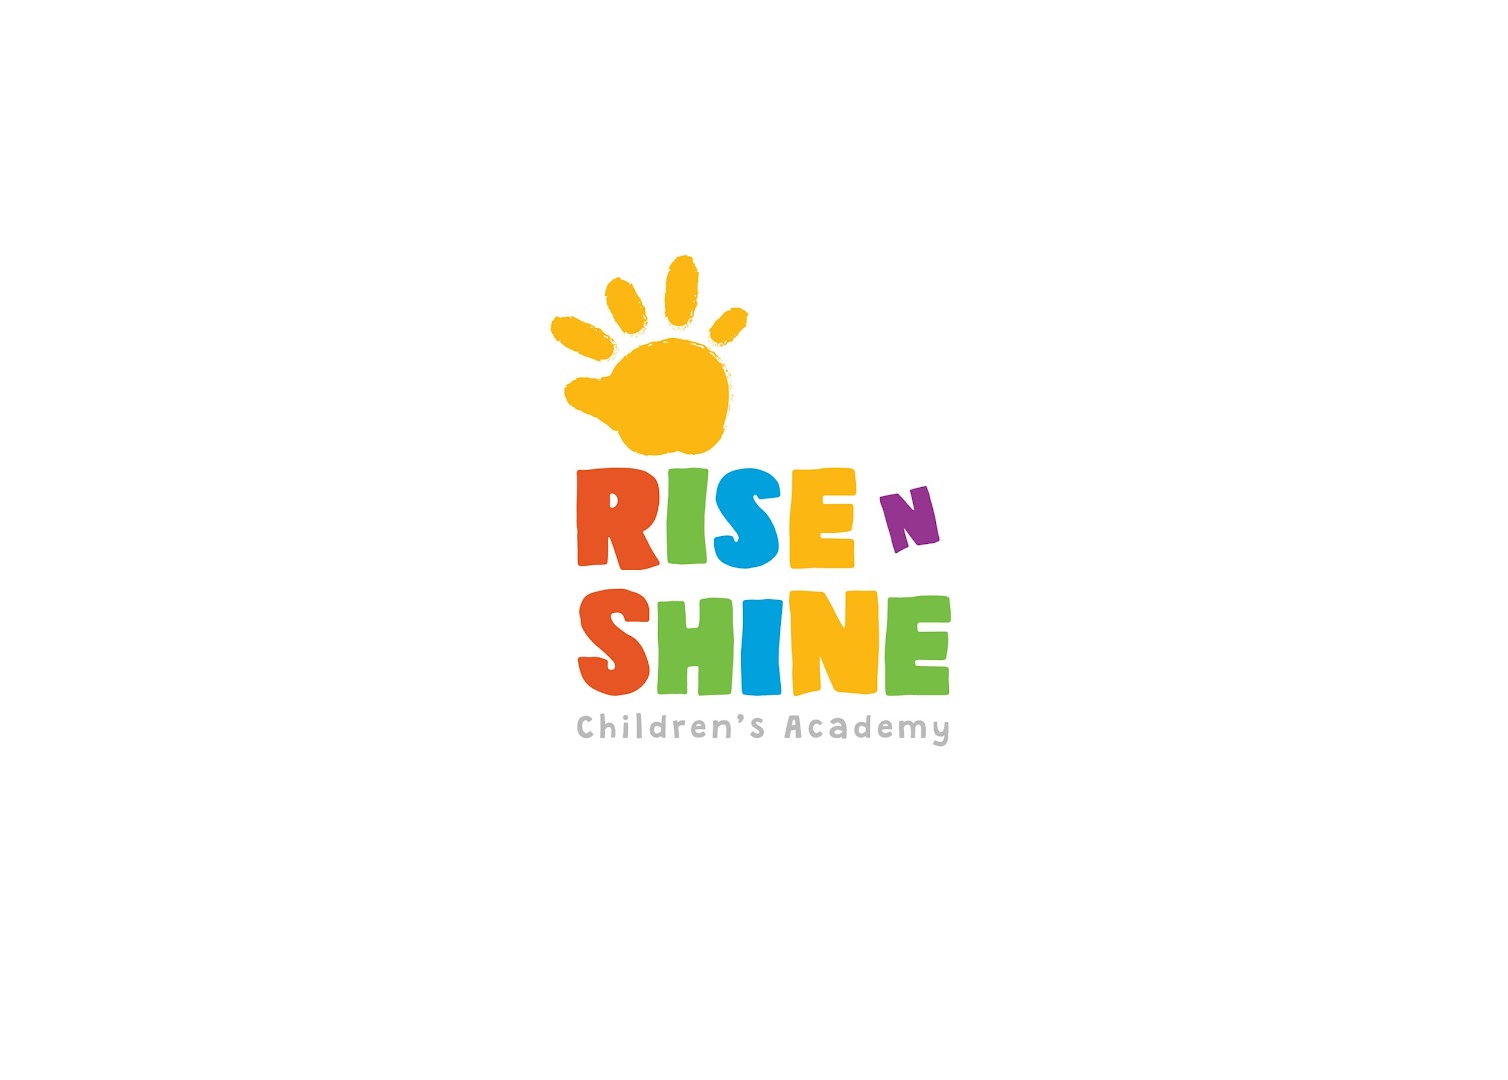 Gambar Rise N Shine Children's Academy